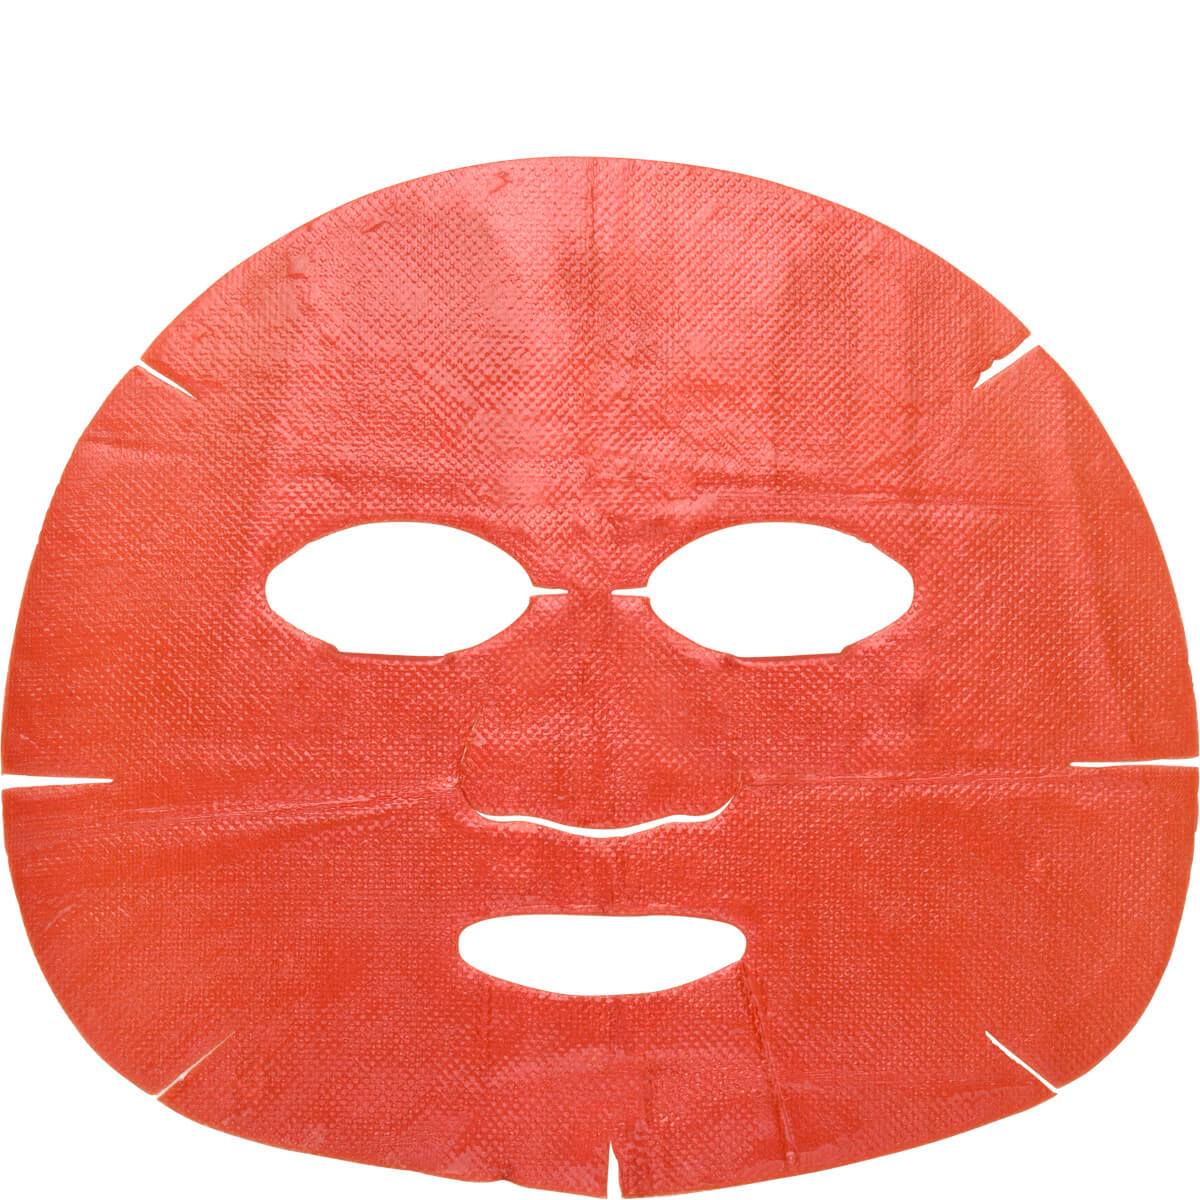 MZ Skin HYDRA-LIFT Golden Facial Treatment Mask - 5 masks